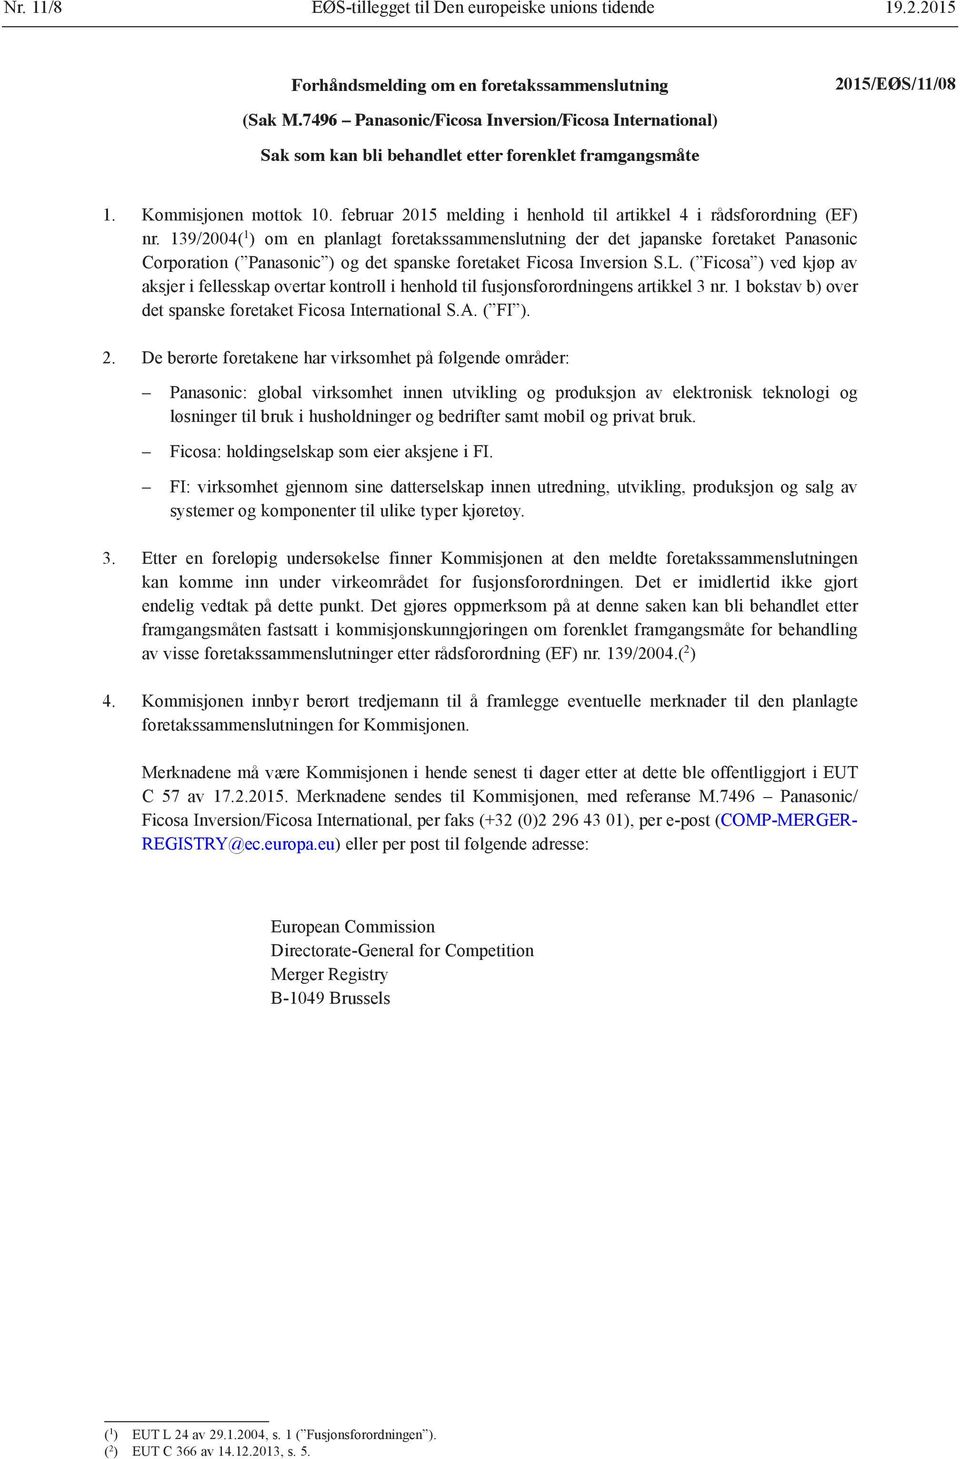 februar 2015 melding i henhold til artikkel 4 i rådsforordning (EF) nr.